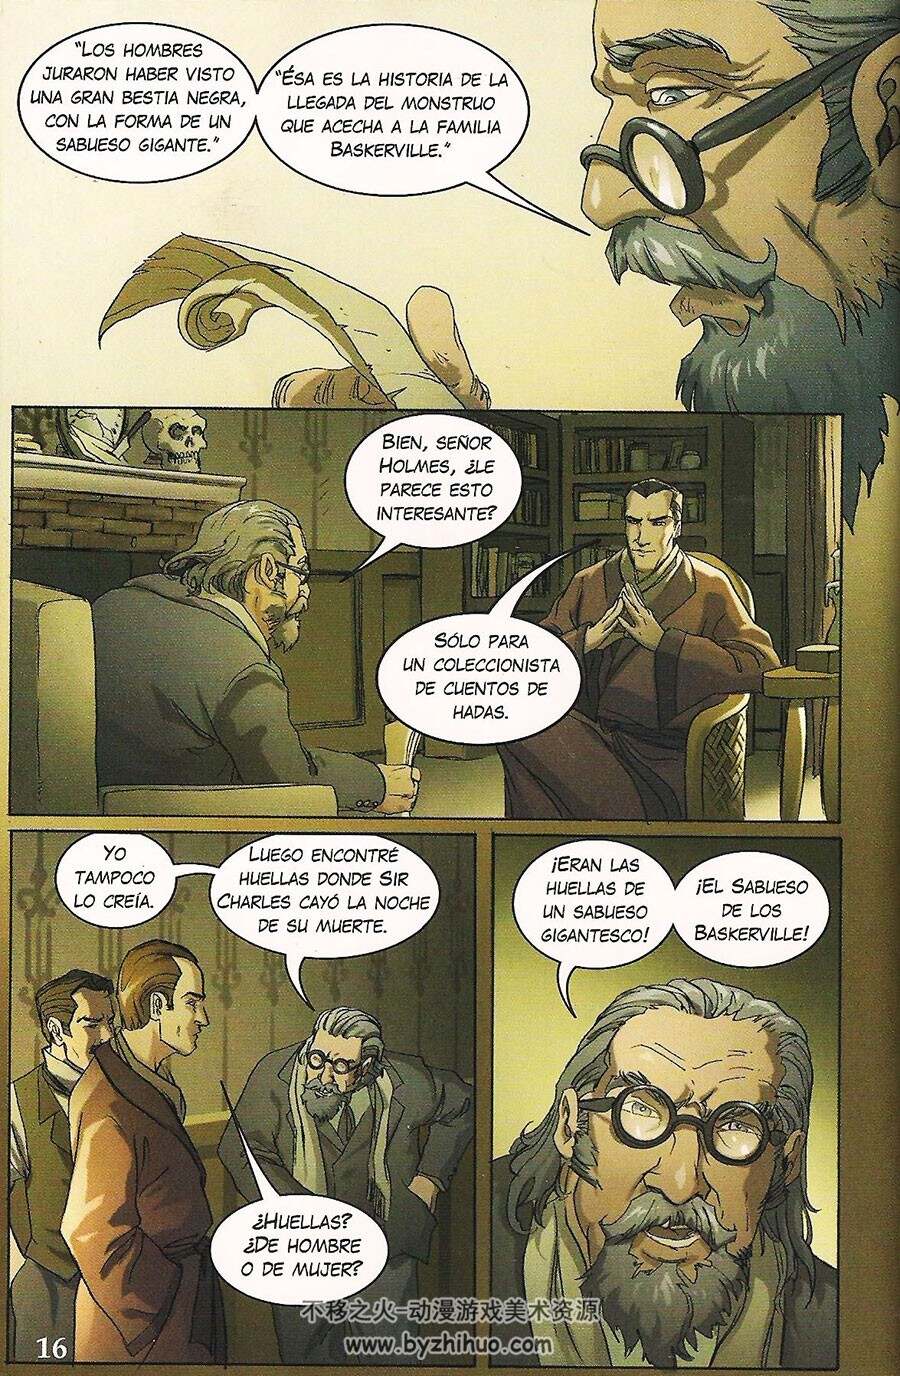 El Sabueso de los Baskerville: Un Misterio de Sherlock Holmes 全一册 Arthur Conan D